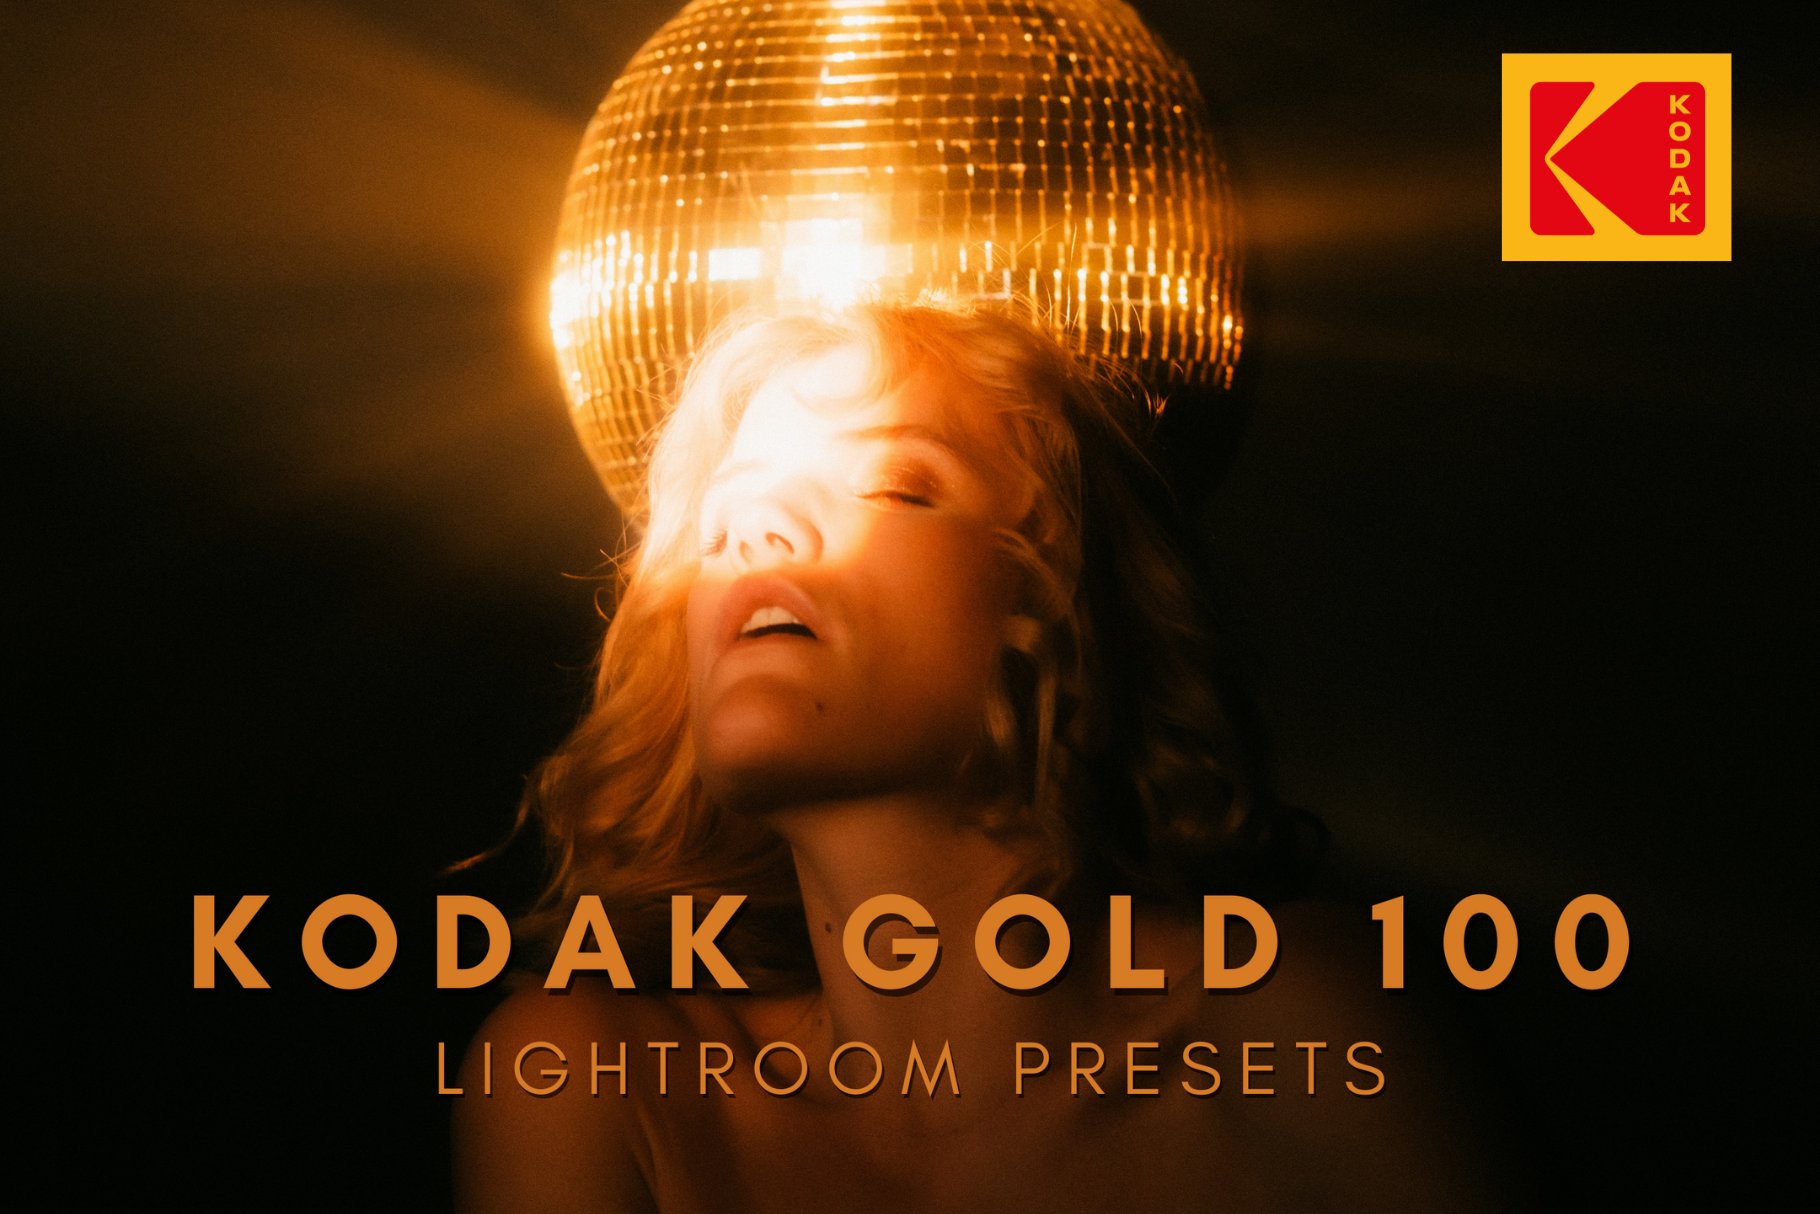 Kodak Gold Lightroom Presets Bundlecover image.